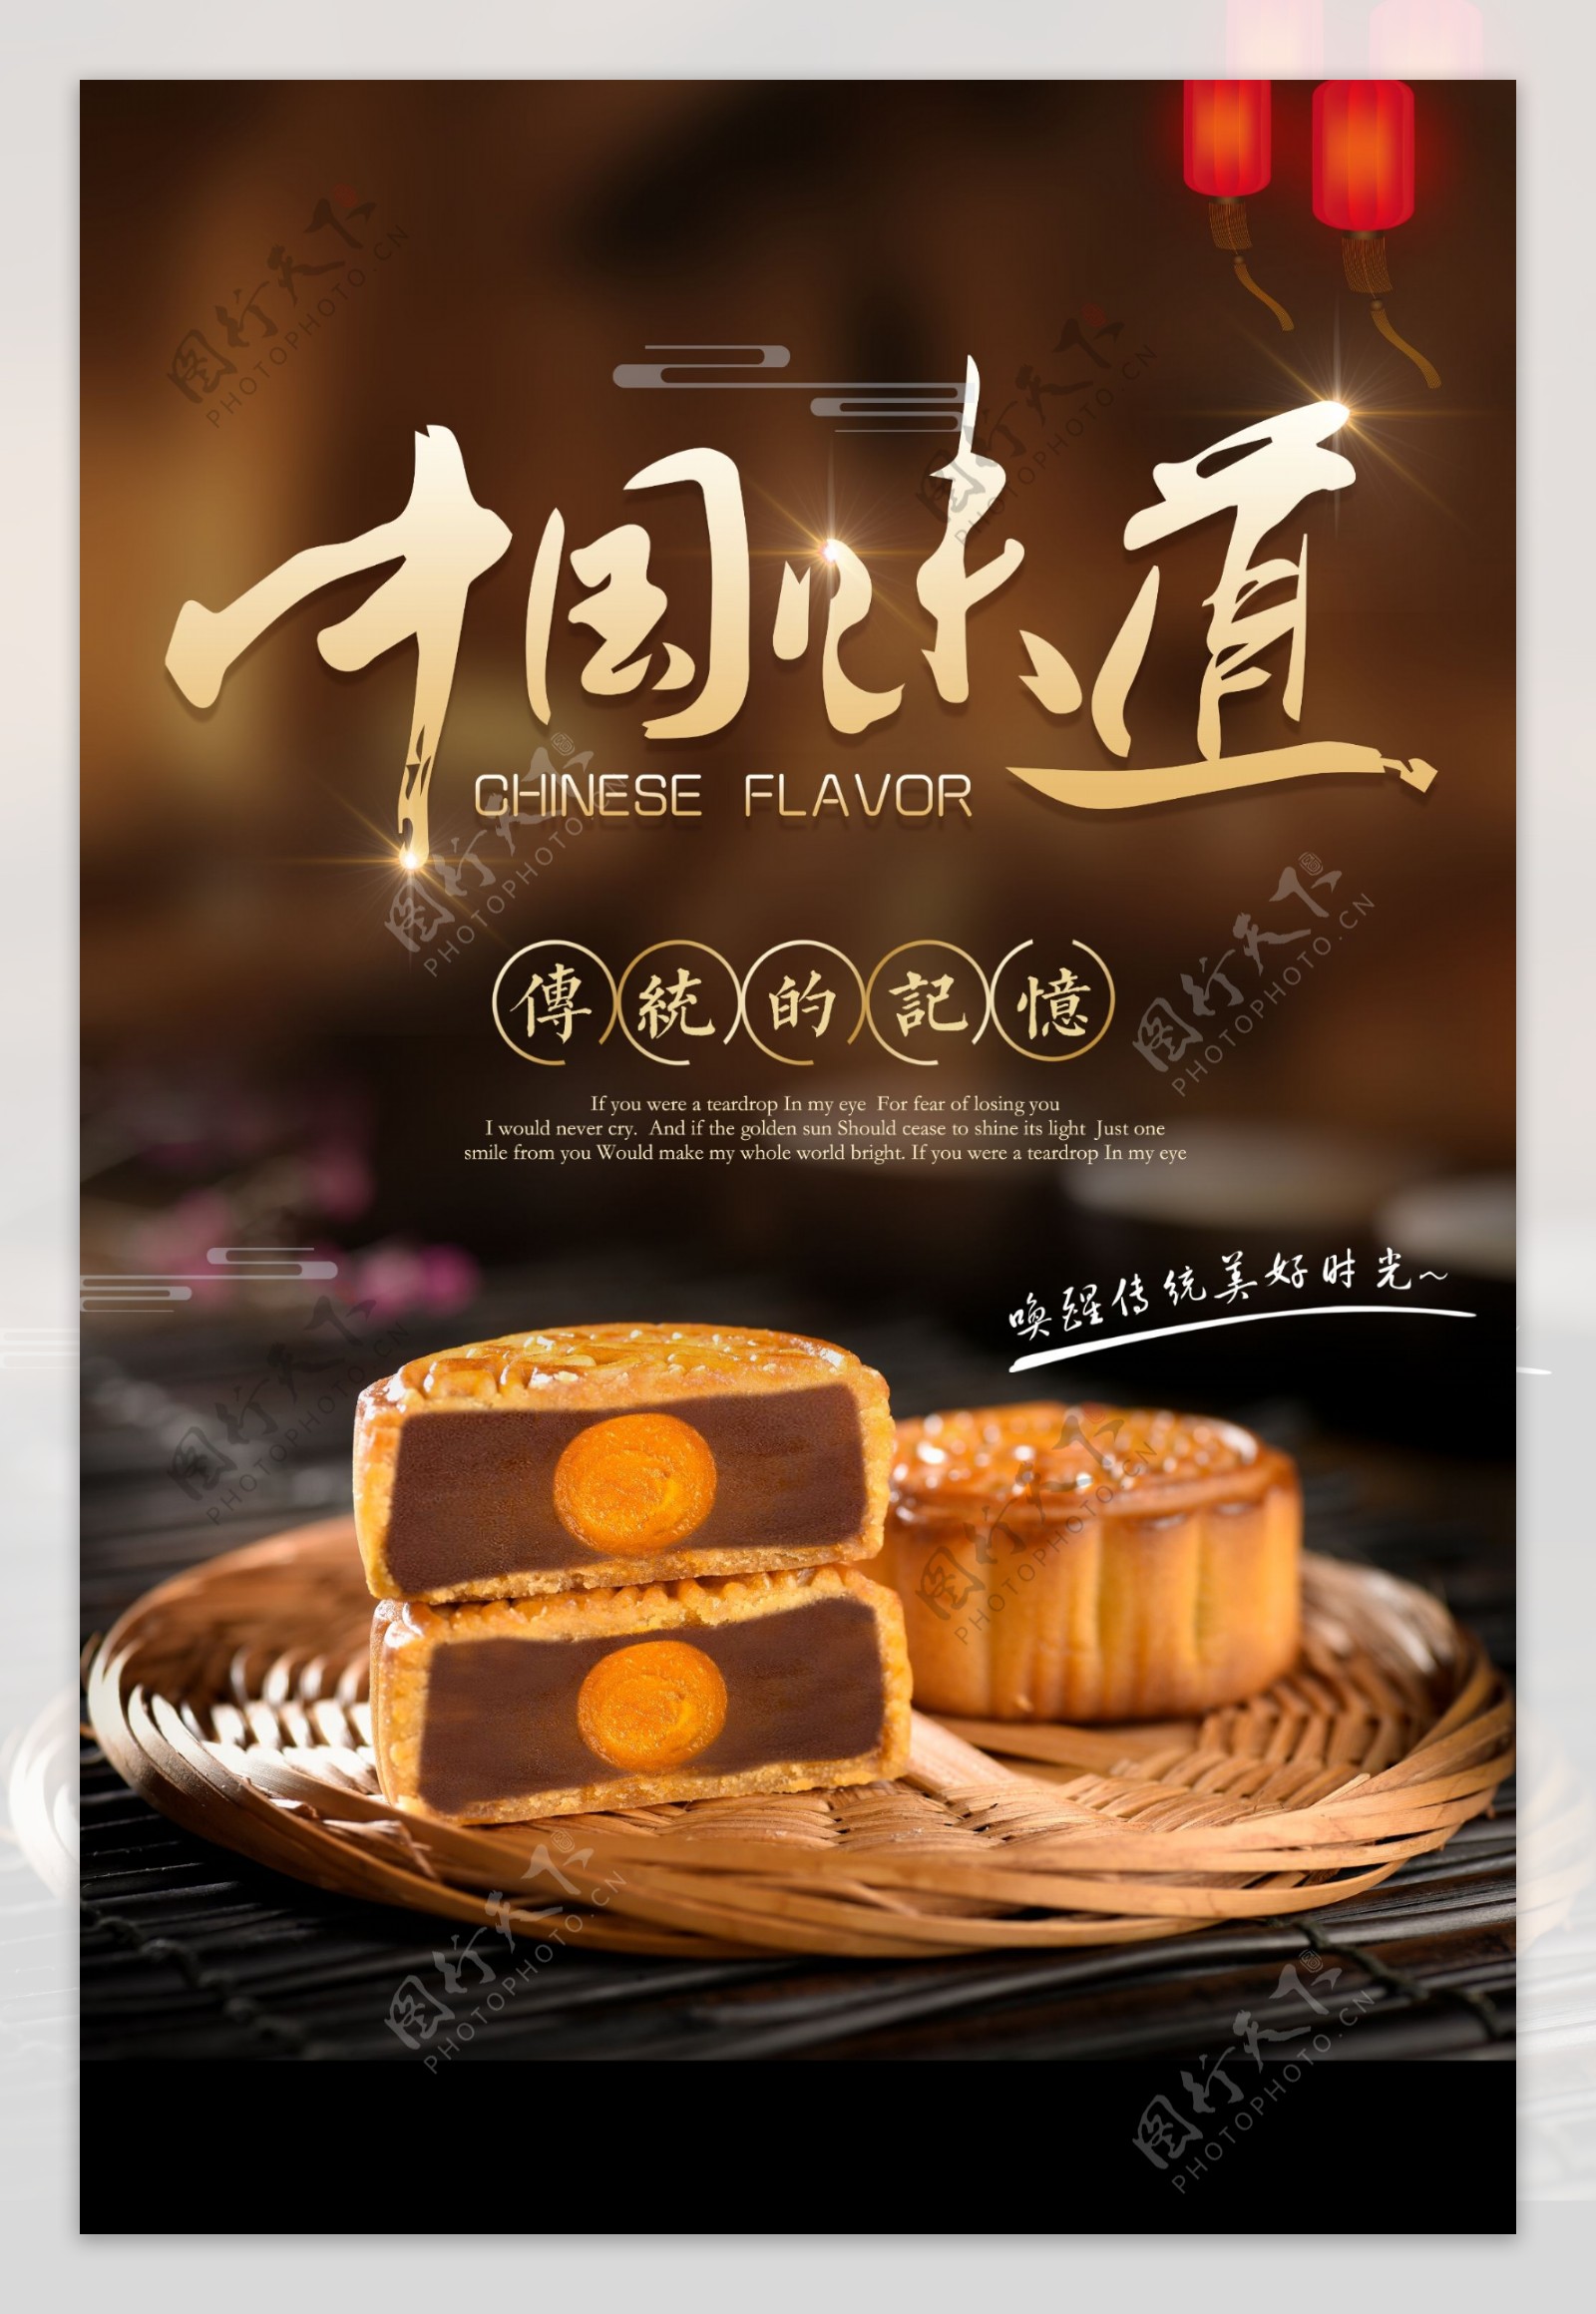 中国味道中秋月饼海报psd素材